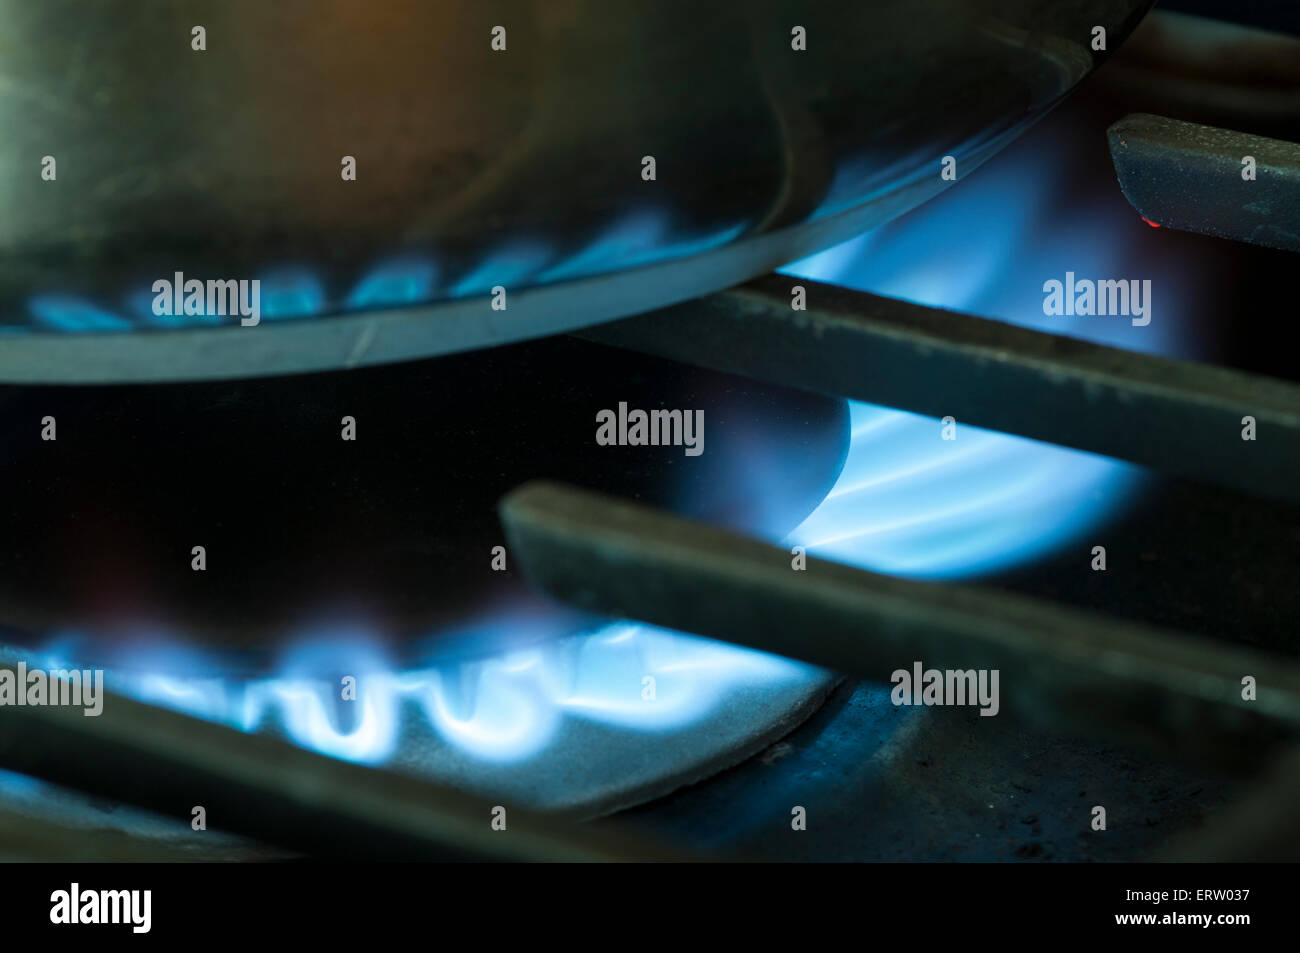 Le gaz naturel pour le chauffage et la cuisine ; l'image est un gros plan d'une flamme bleu vif de gaz utilisé pour chauffer ou cuire sur une gamme top dans un quartier résidentiel cuisine Banque D'Images